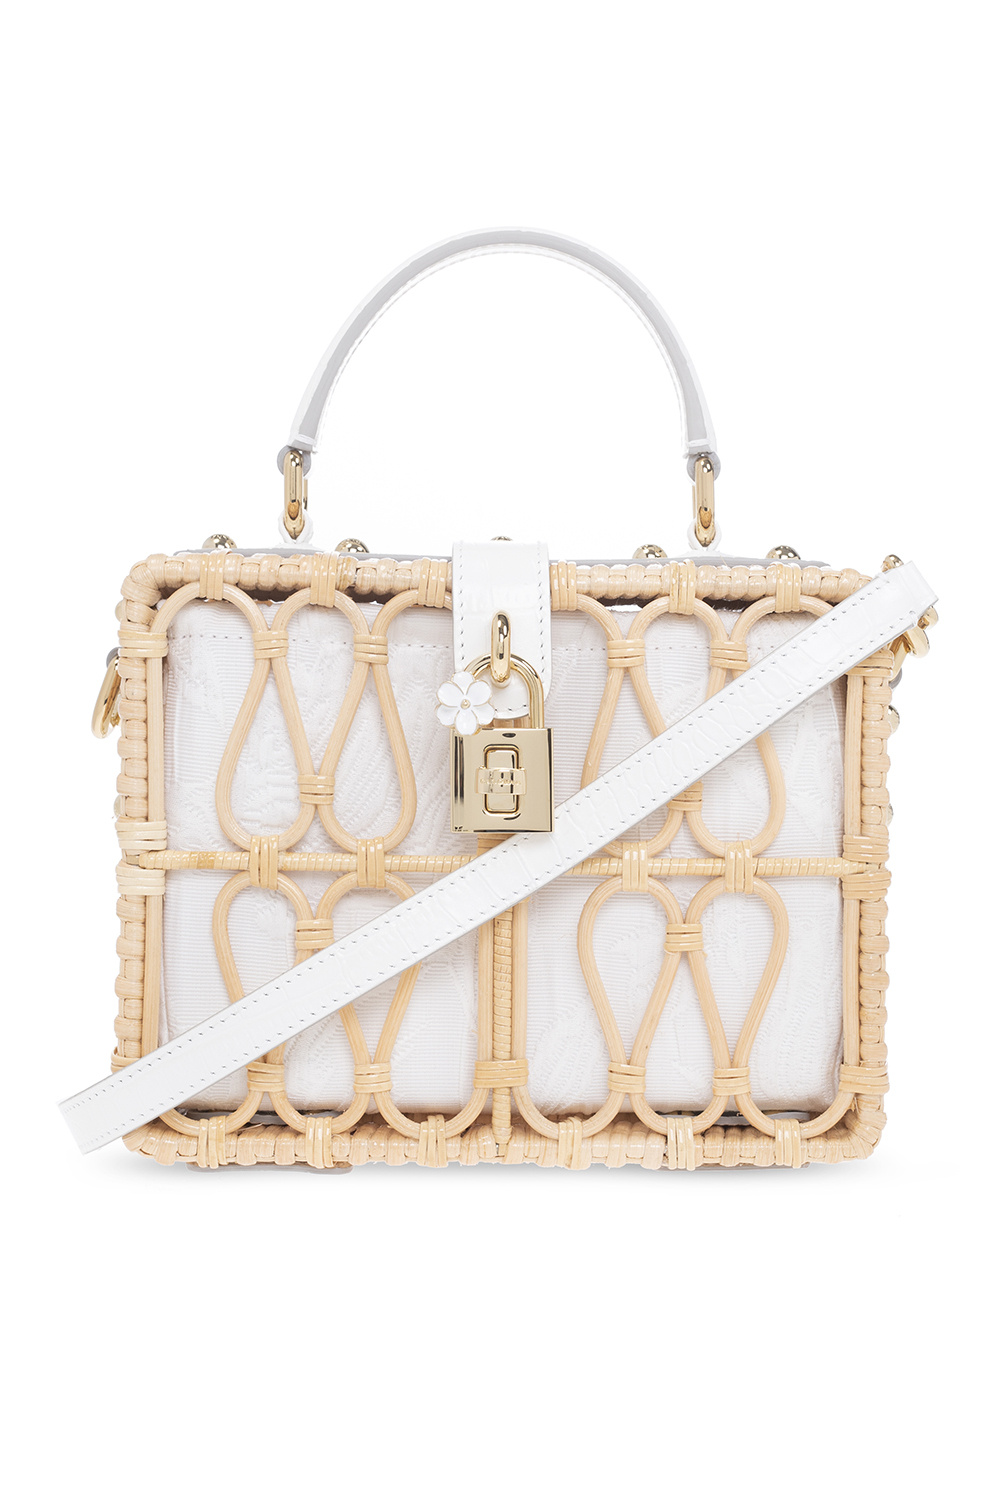 Dolce & Gabbana ‘Dolce Box‘ handbag